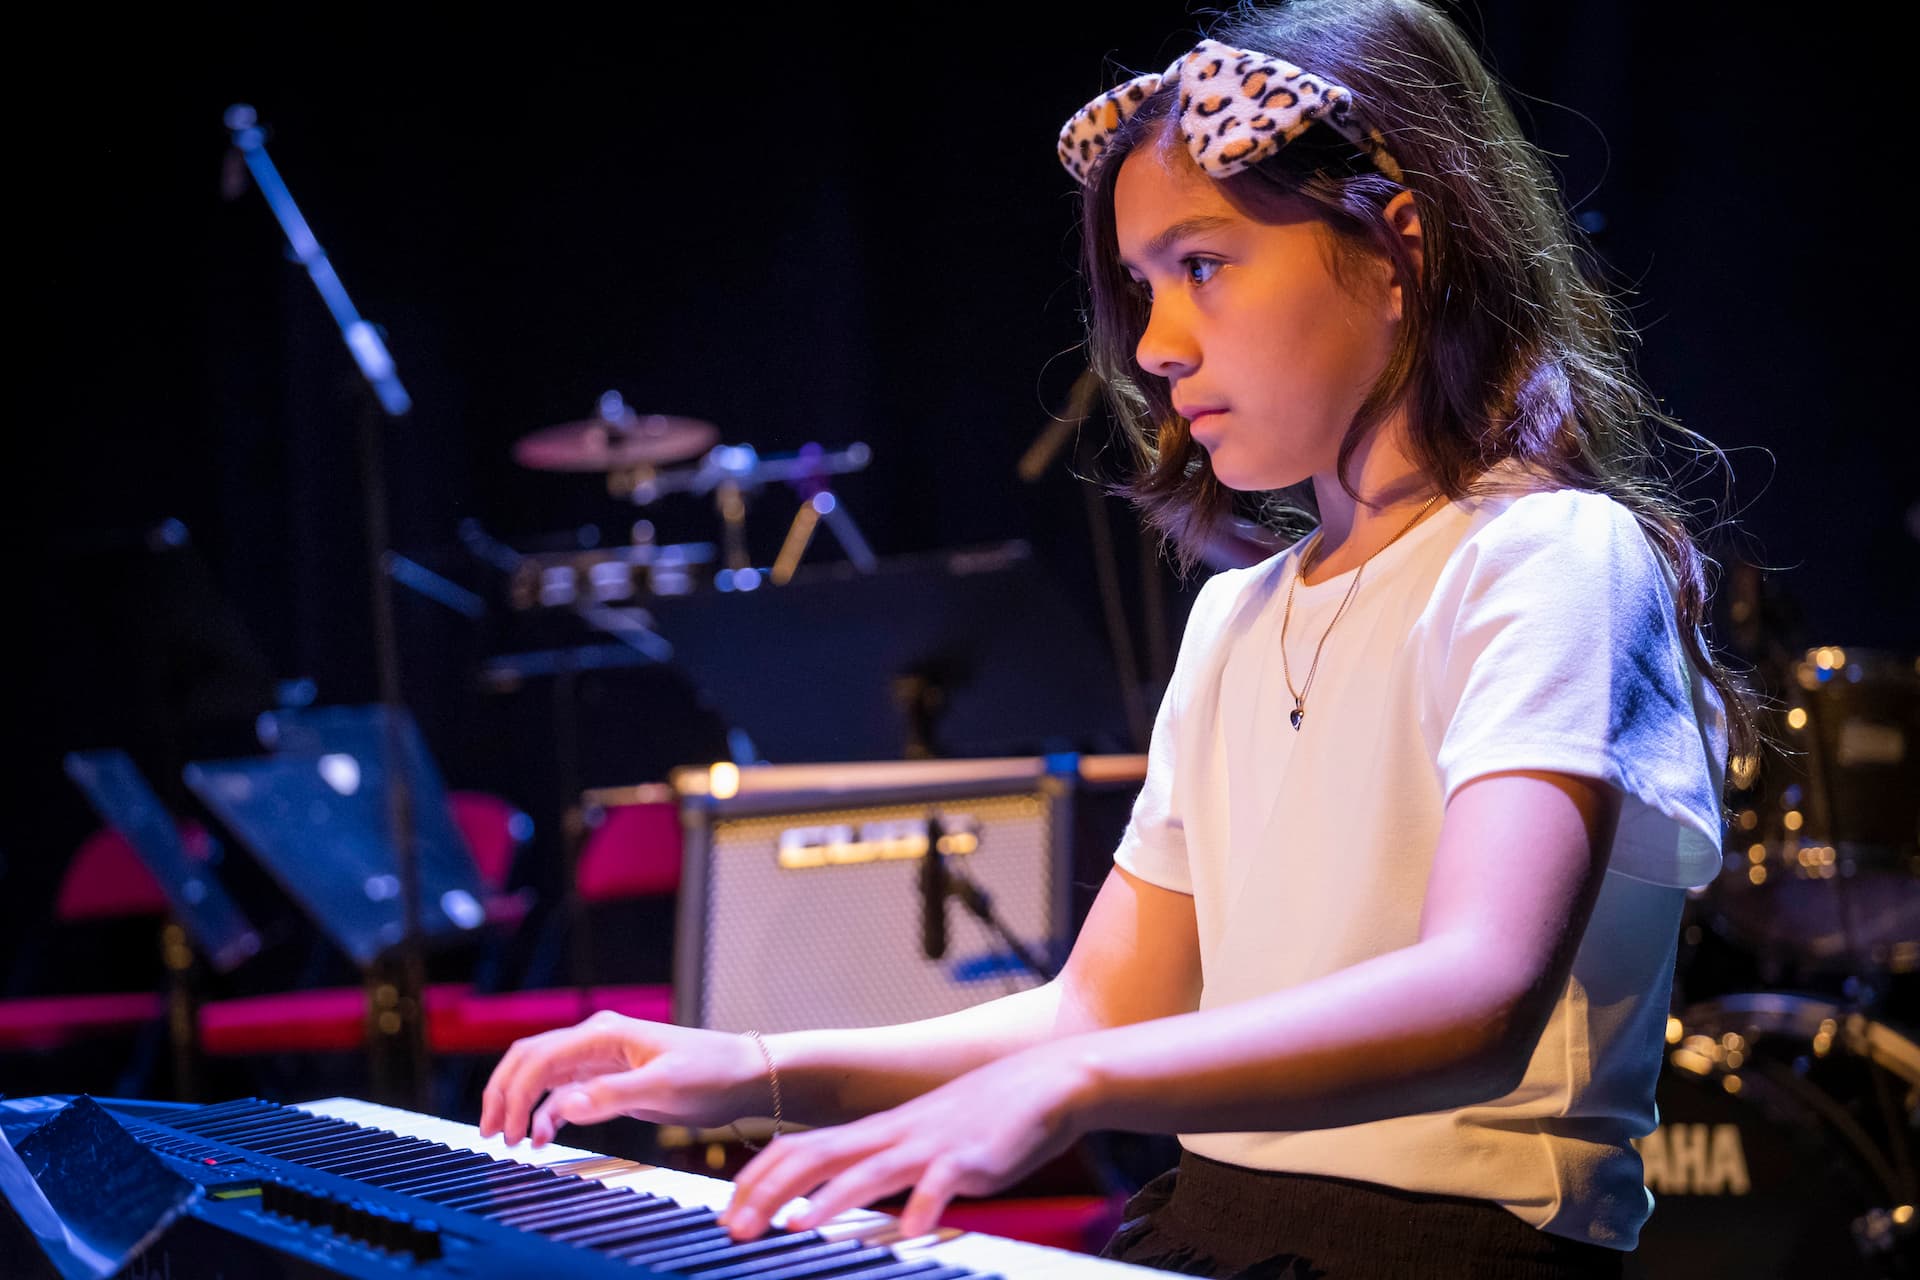 En pige spiller klaver og kigger koncentreret på sine noder